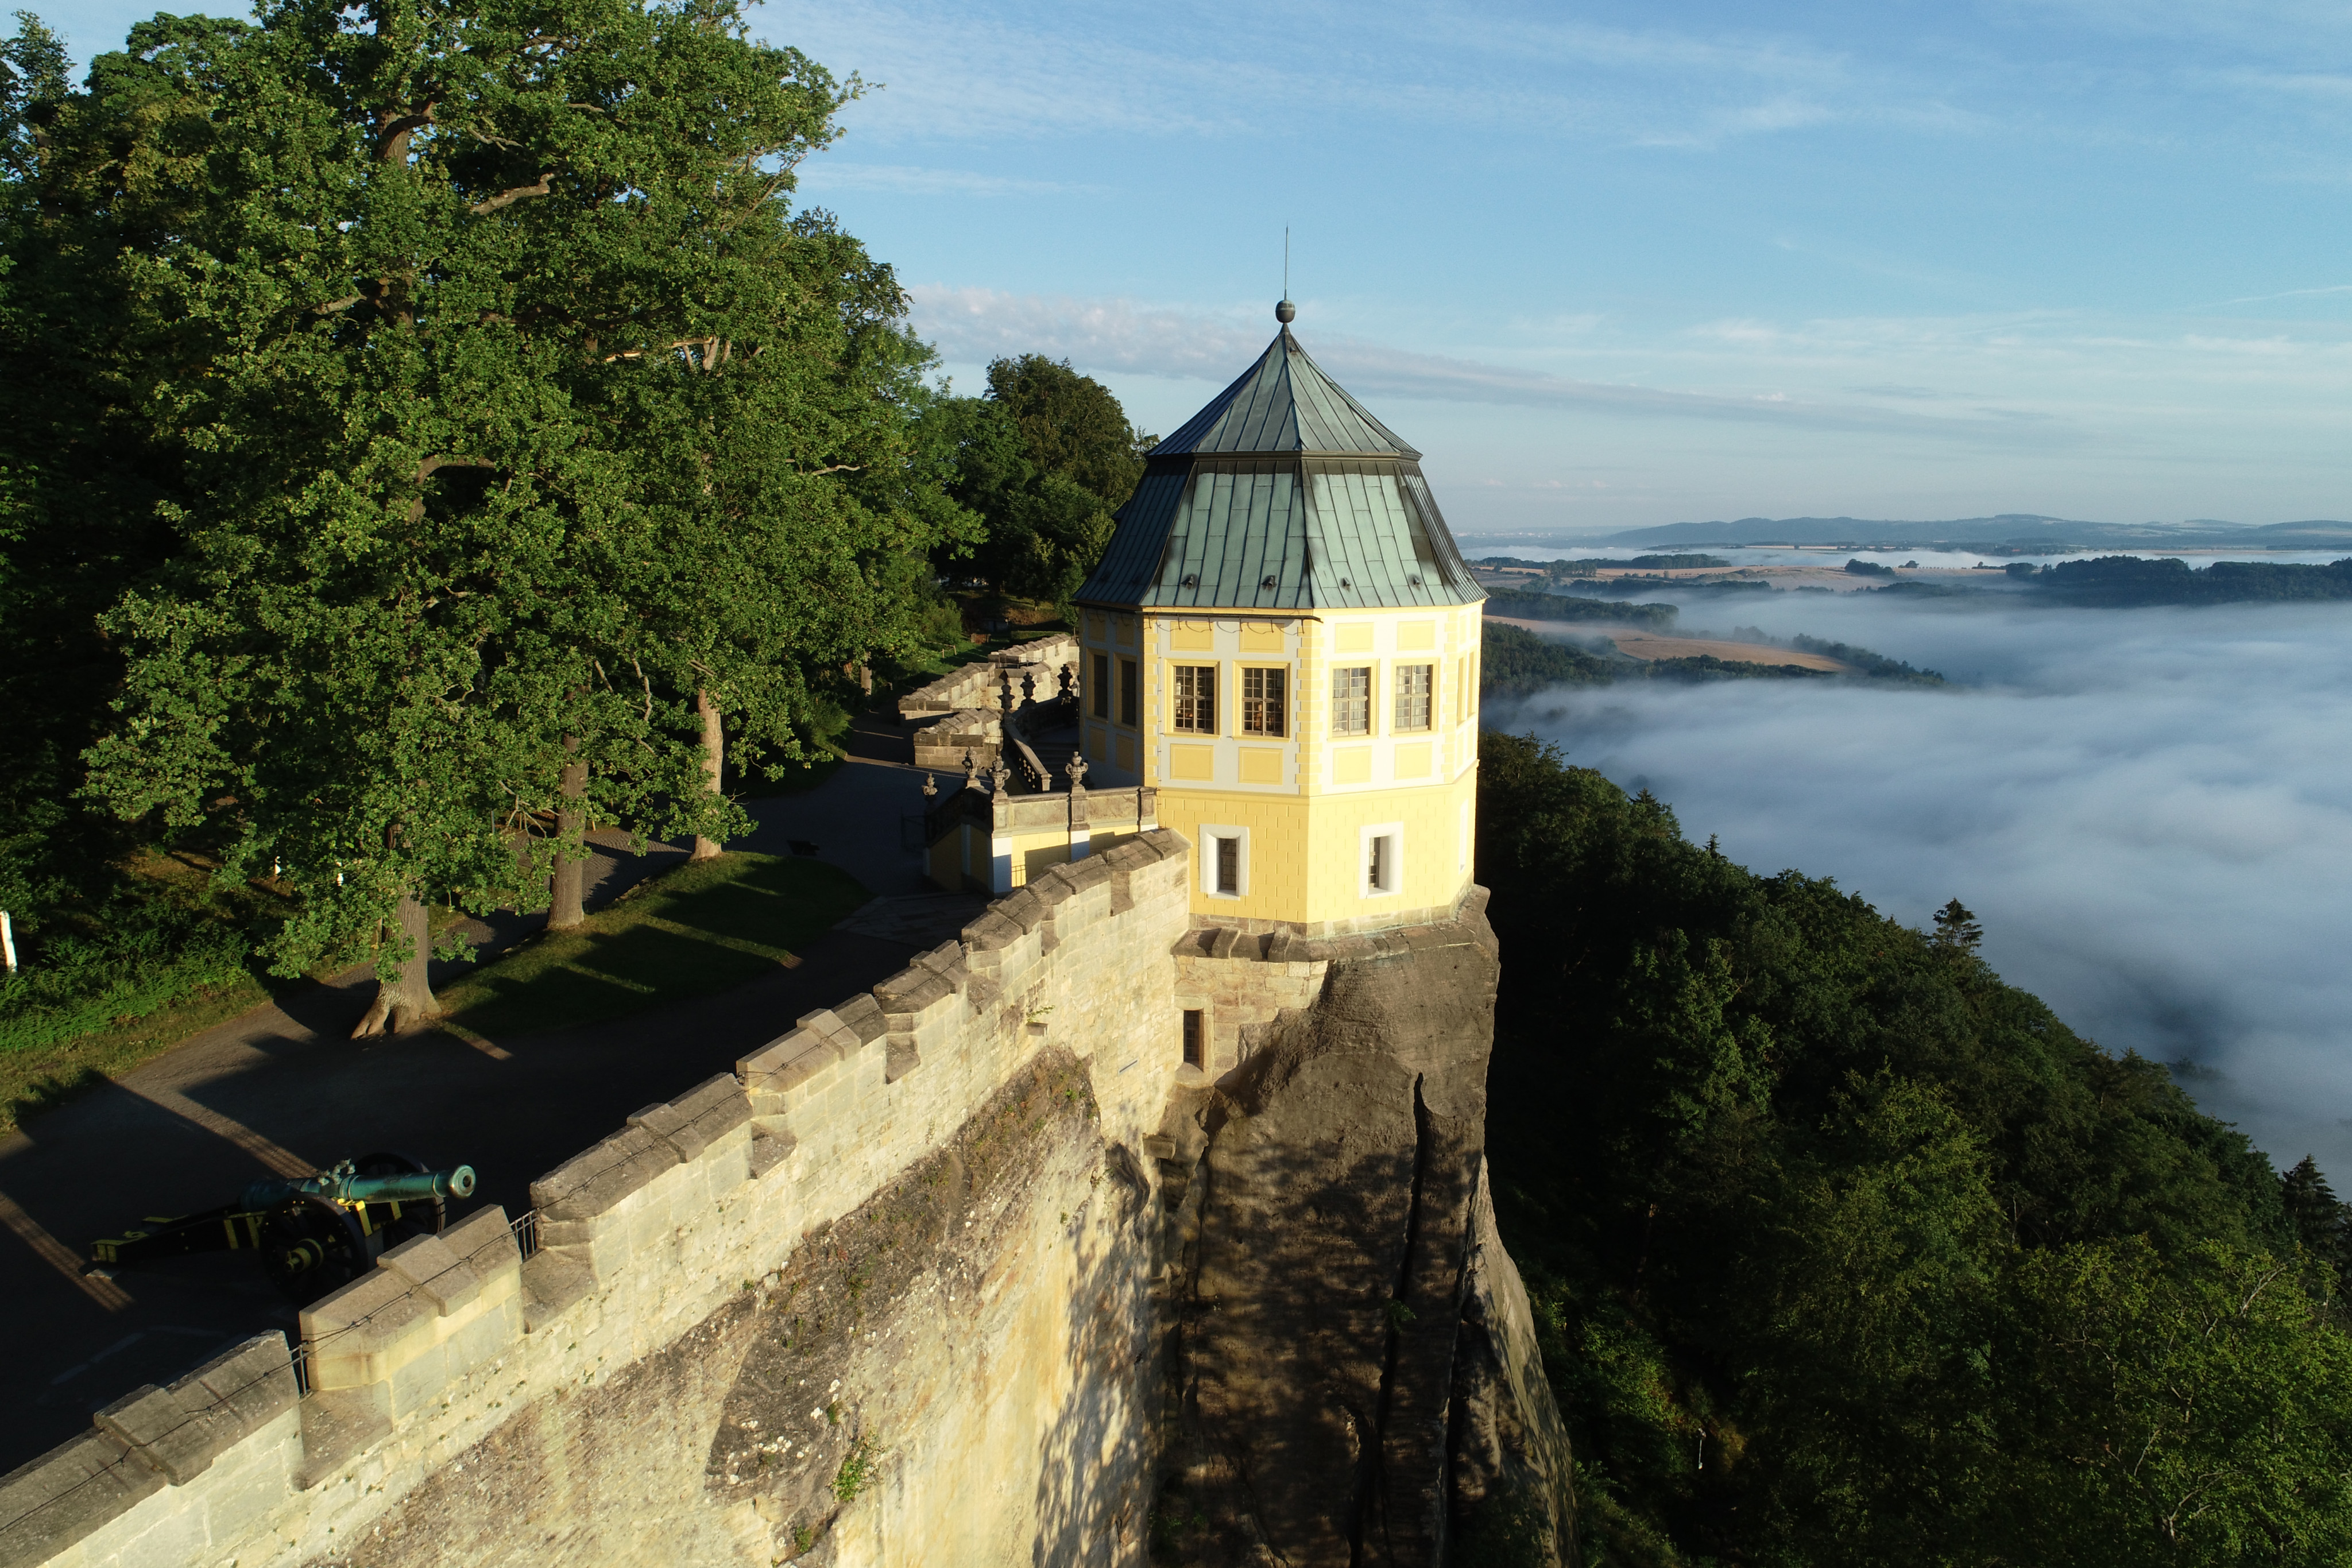 Koenigstein Fortress in Koenigstein - Tours and Activities